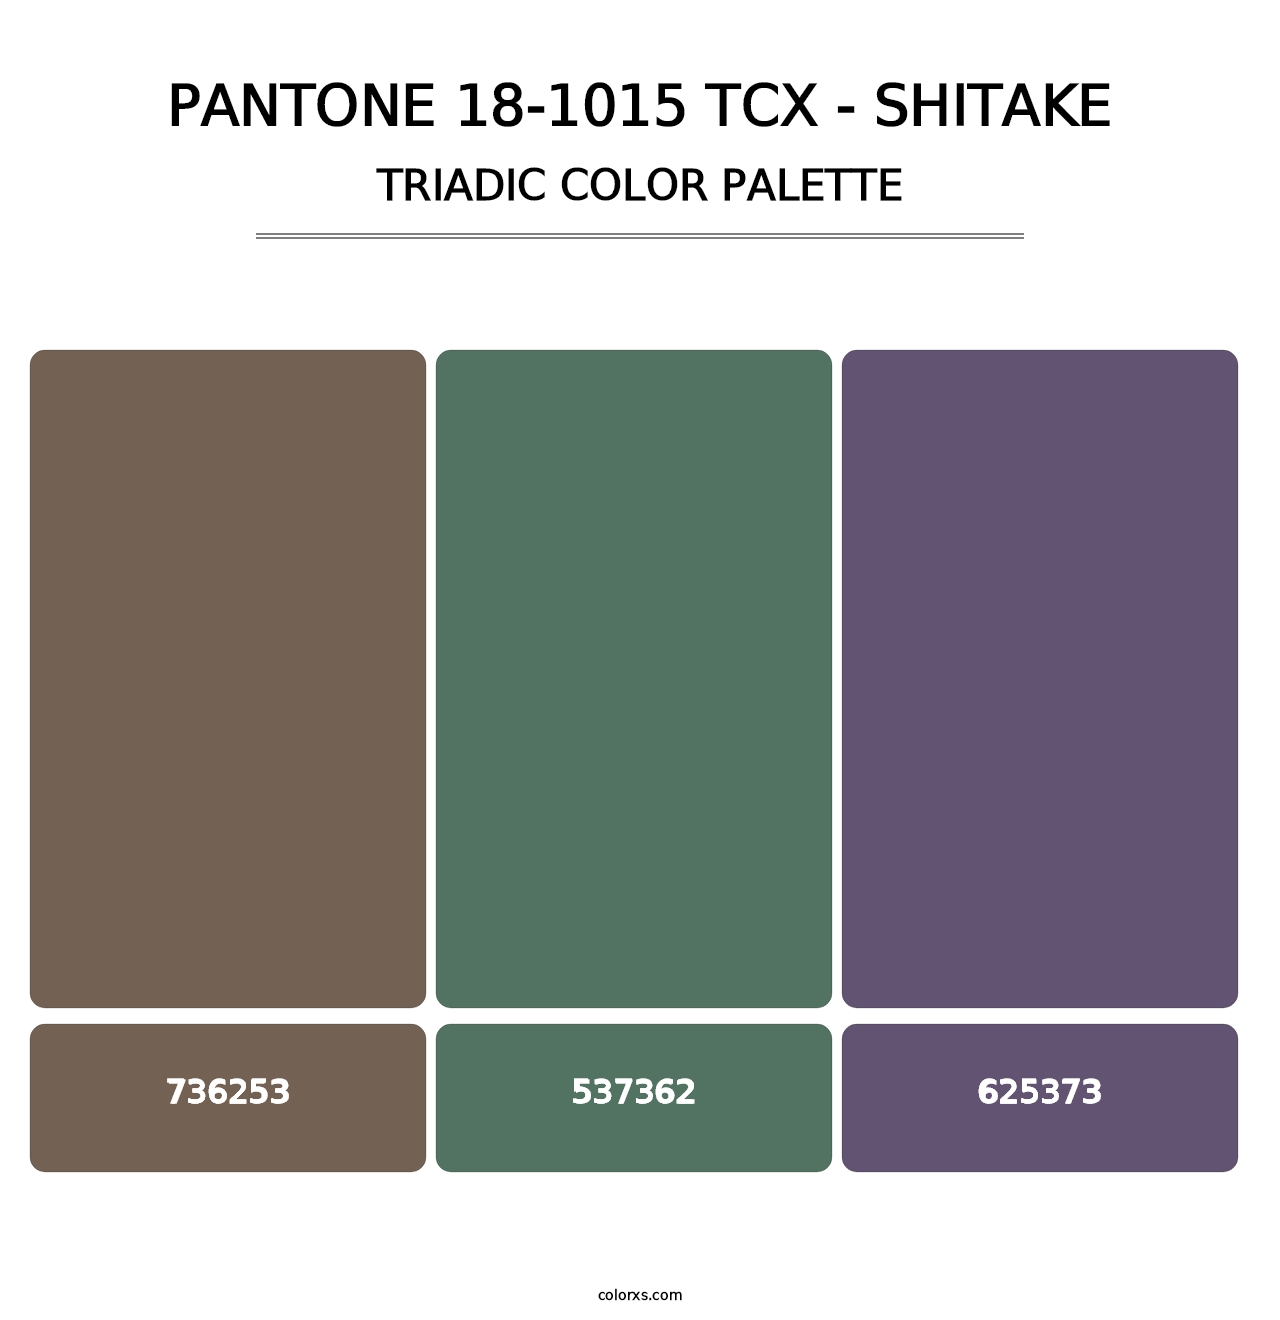 PANTONE 18-1015 TCX - Shitake - Triadic Color Palette